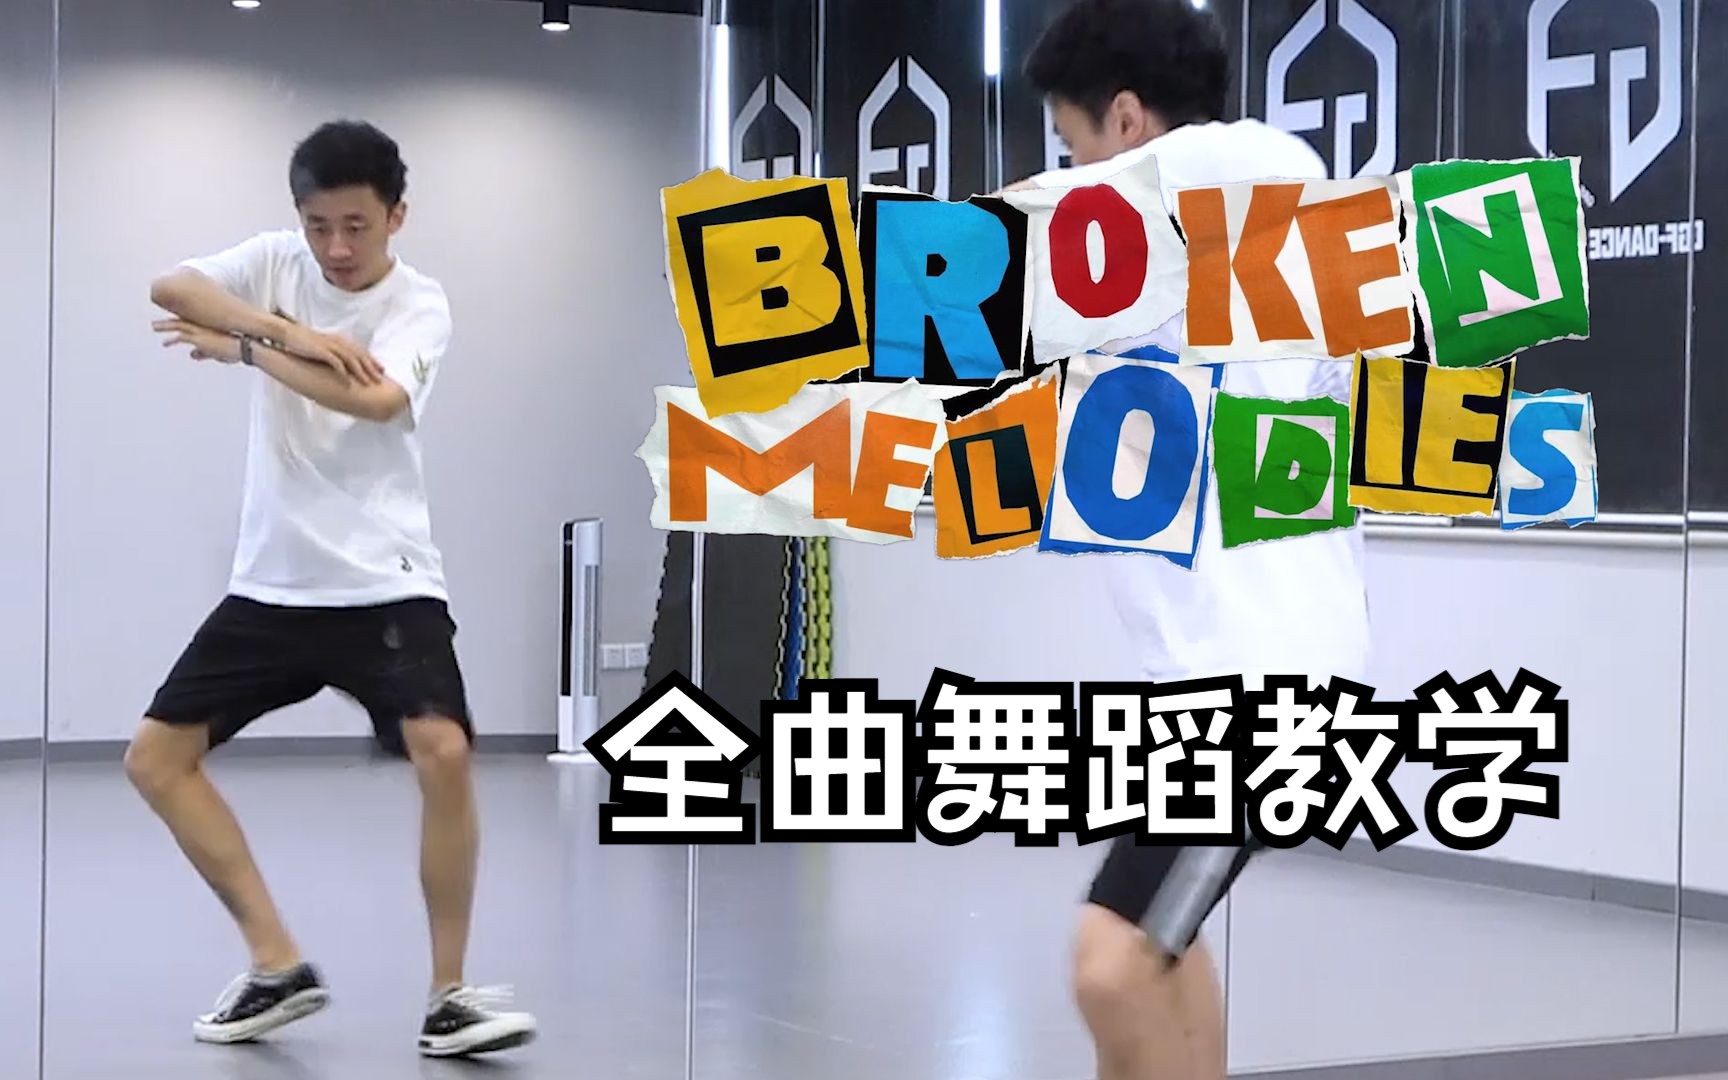 【南舞团】broken melodies  全曲舞蹈教学 NCT DREAM 分解教程 翻跳 练习室直拍 上